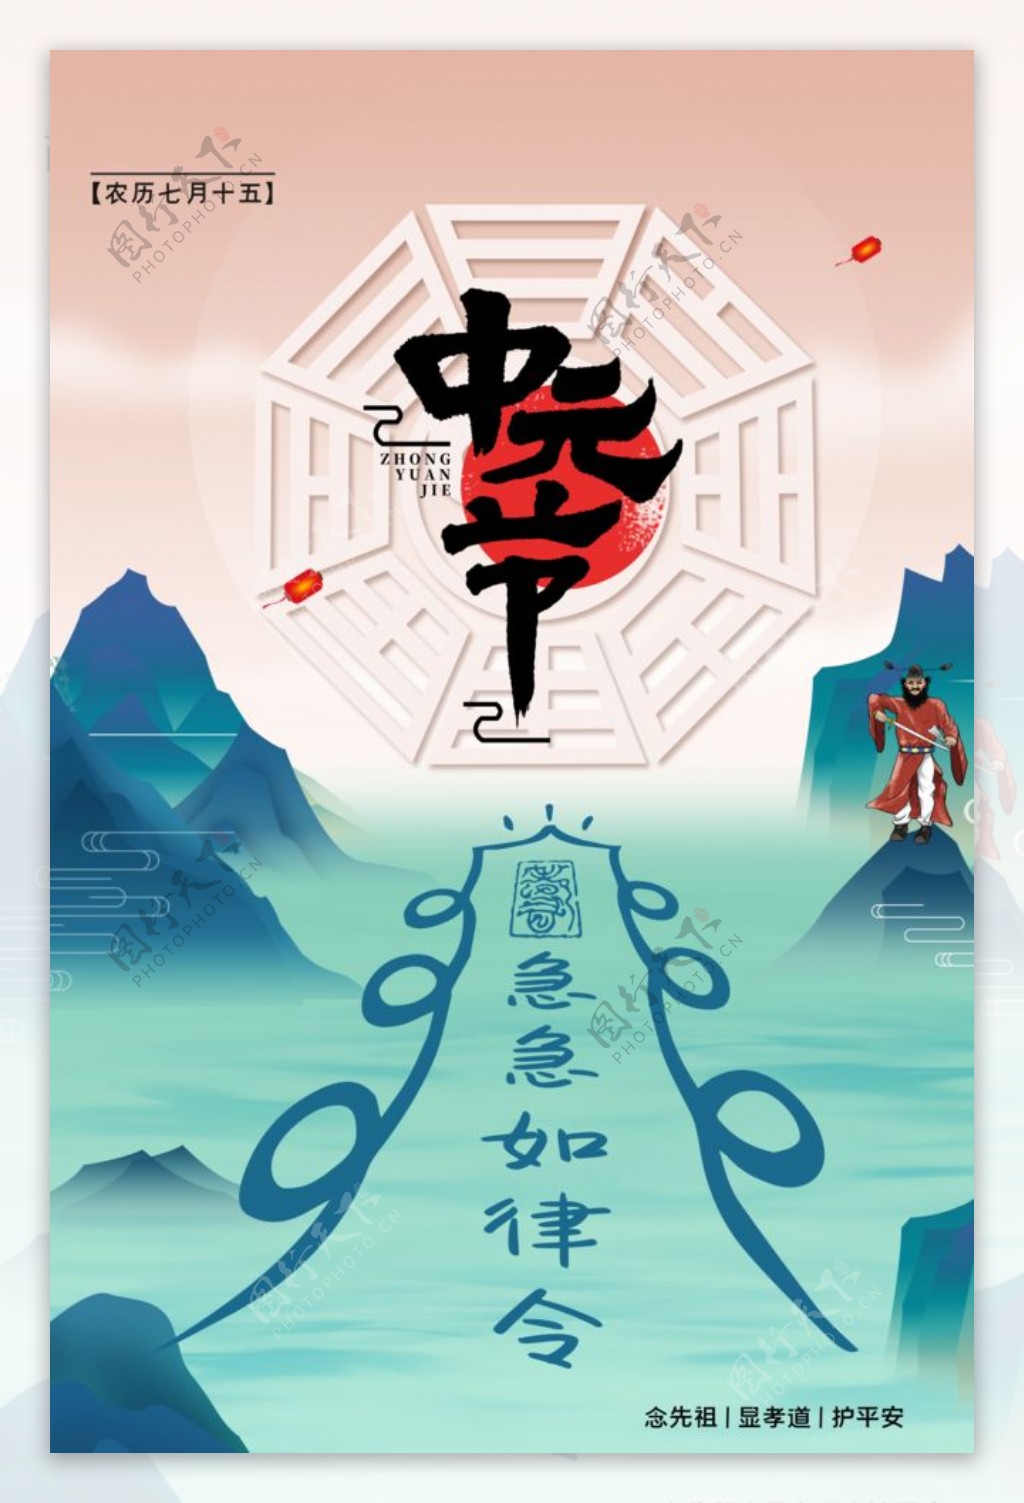 简约传统节日中元节海报